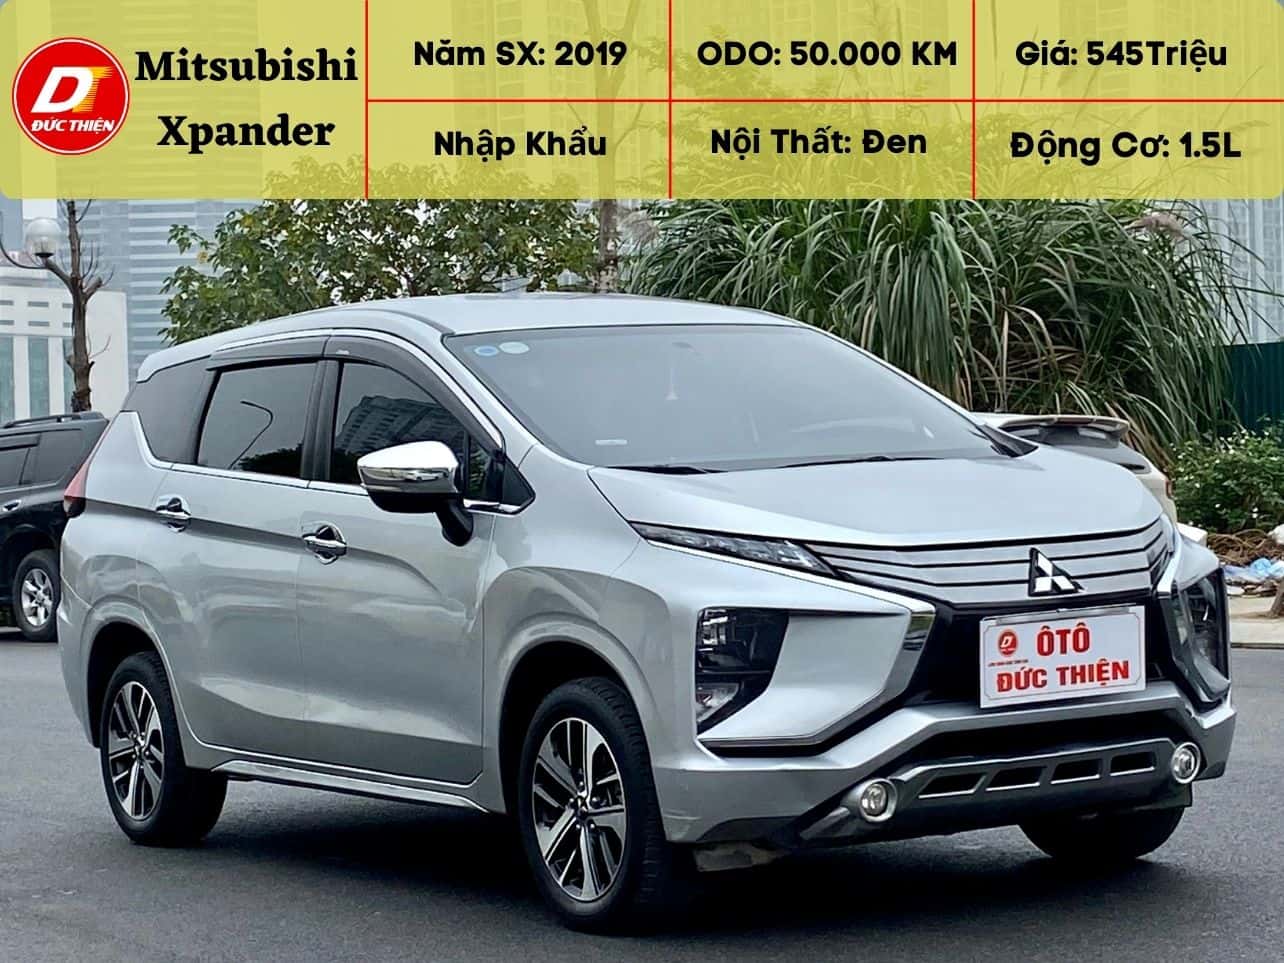 Giá lăn bánh Mitsubishi Xpander 2019 tại Việt Nam